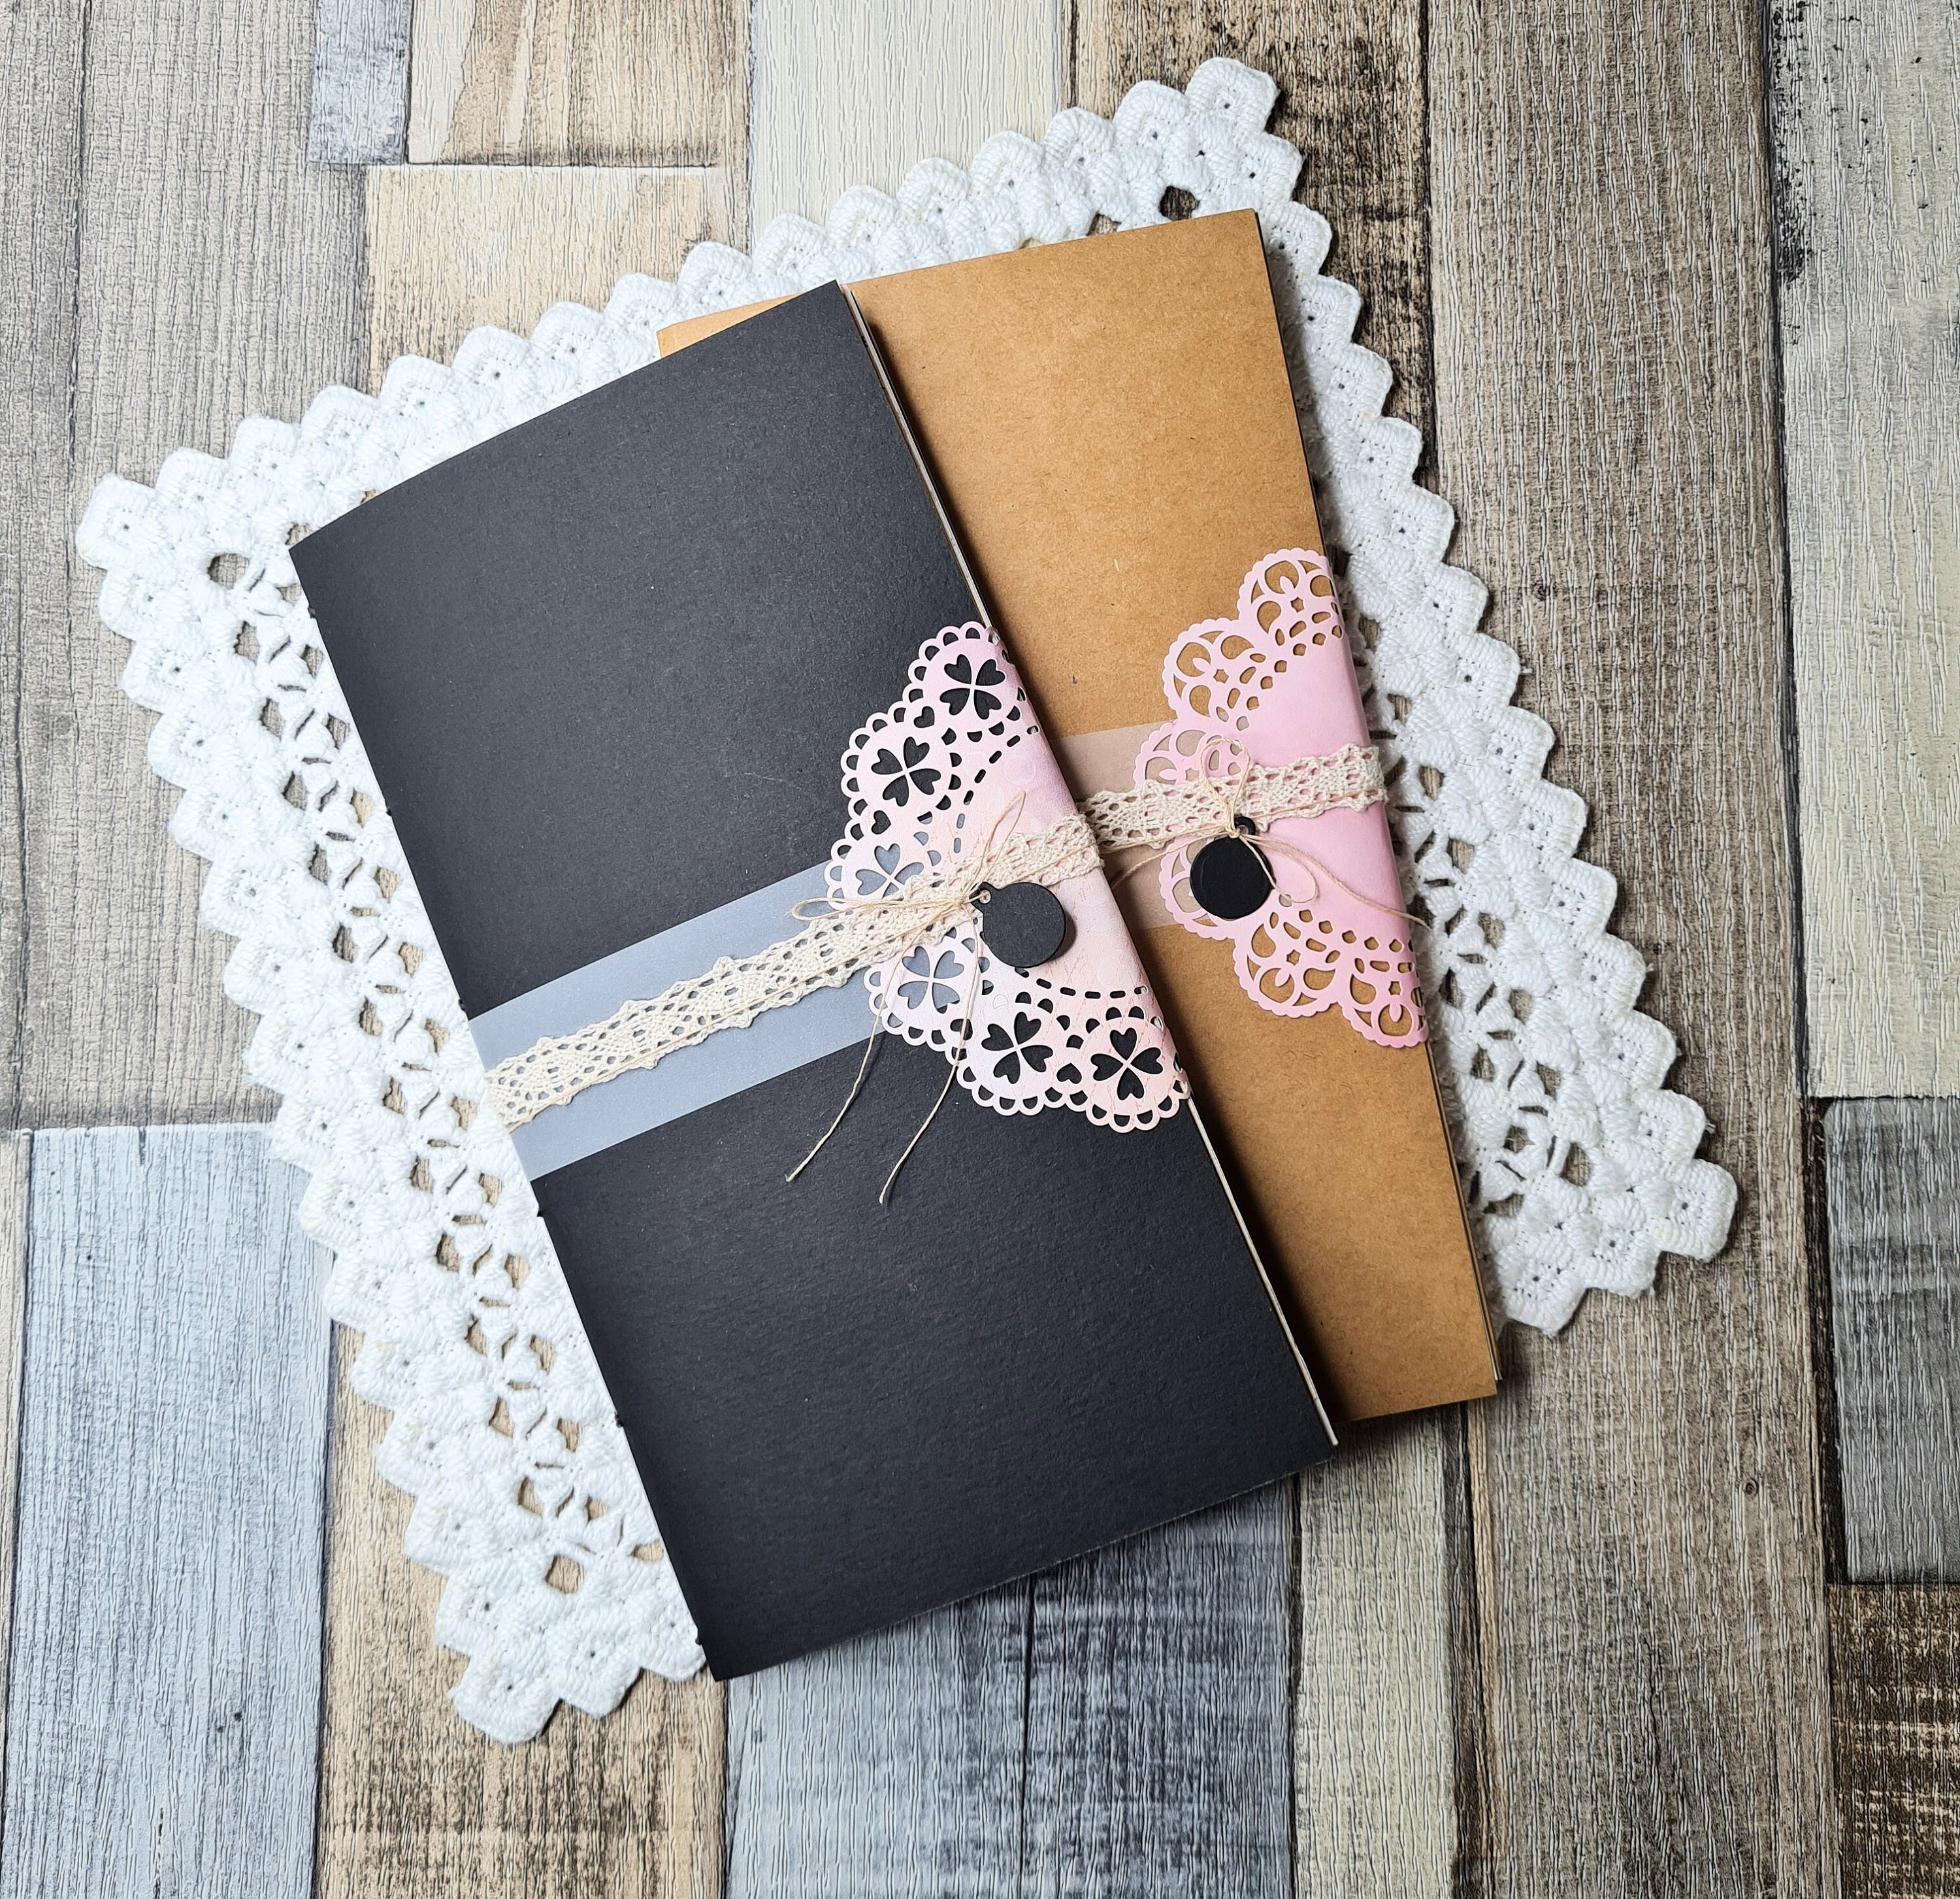 Travelers Notebook Insert Handmade Junk Journal Ephemera Fauxdori Diary  Planner